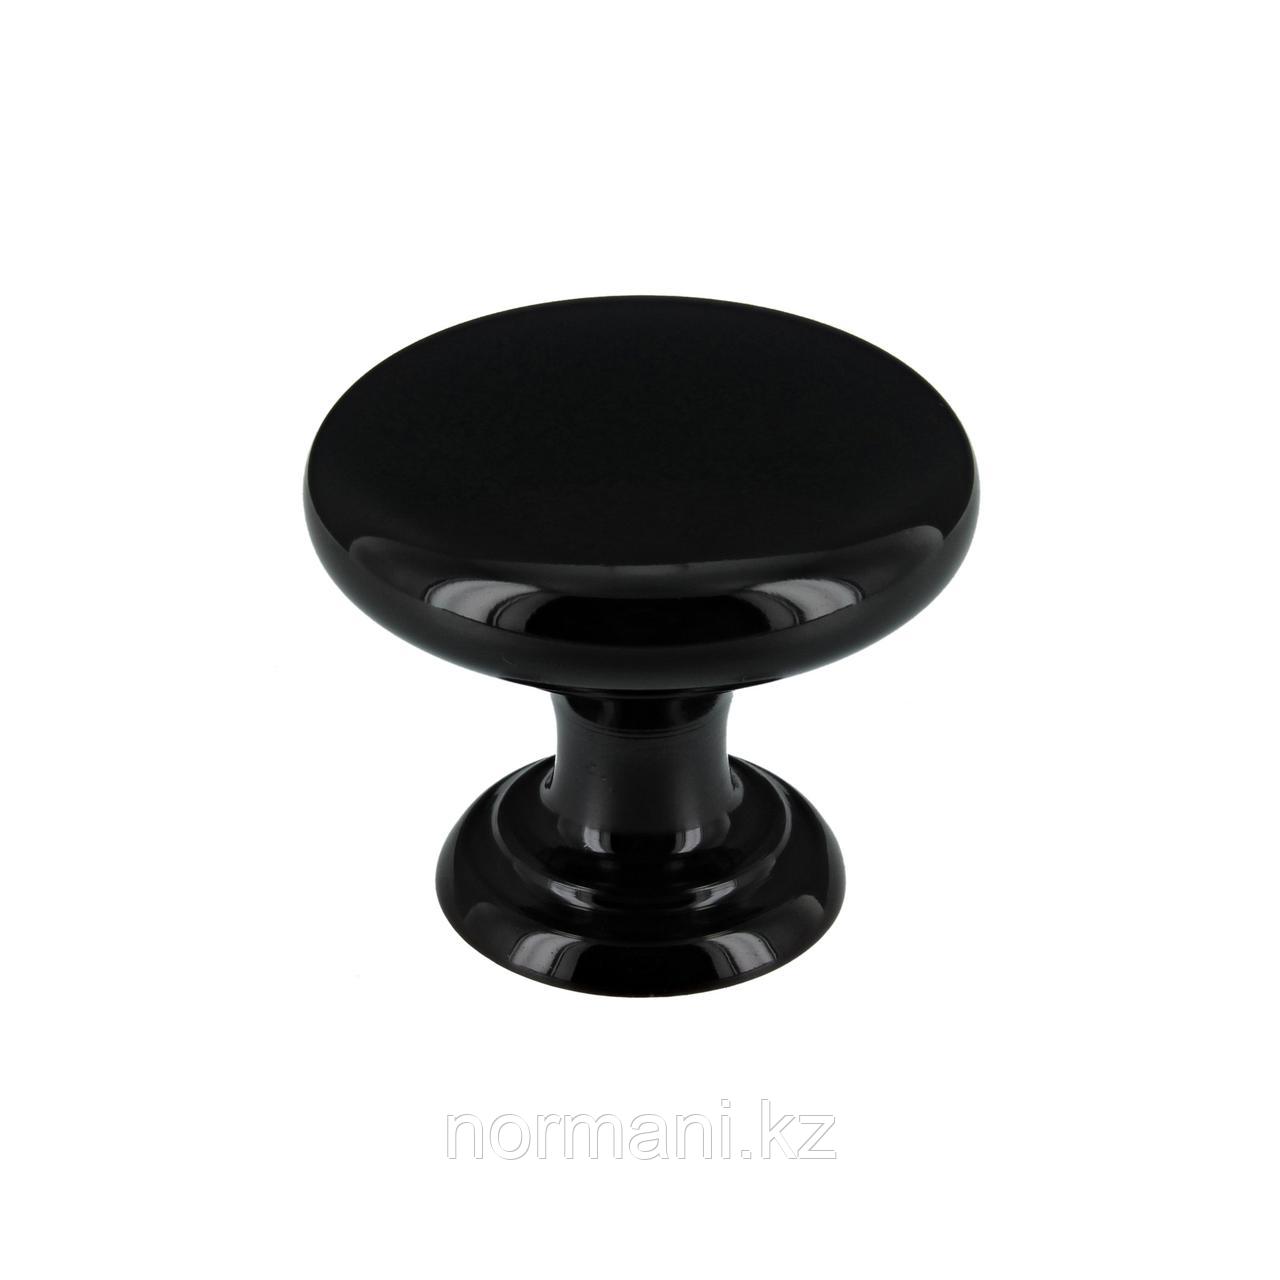 Ручка кнопка диаметр 32 мм, отделка черный матовый, фото 1